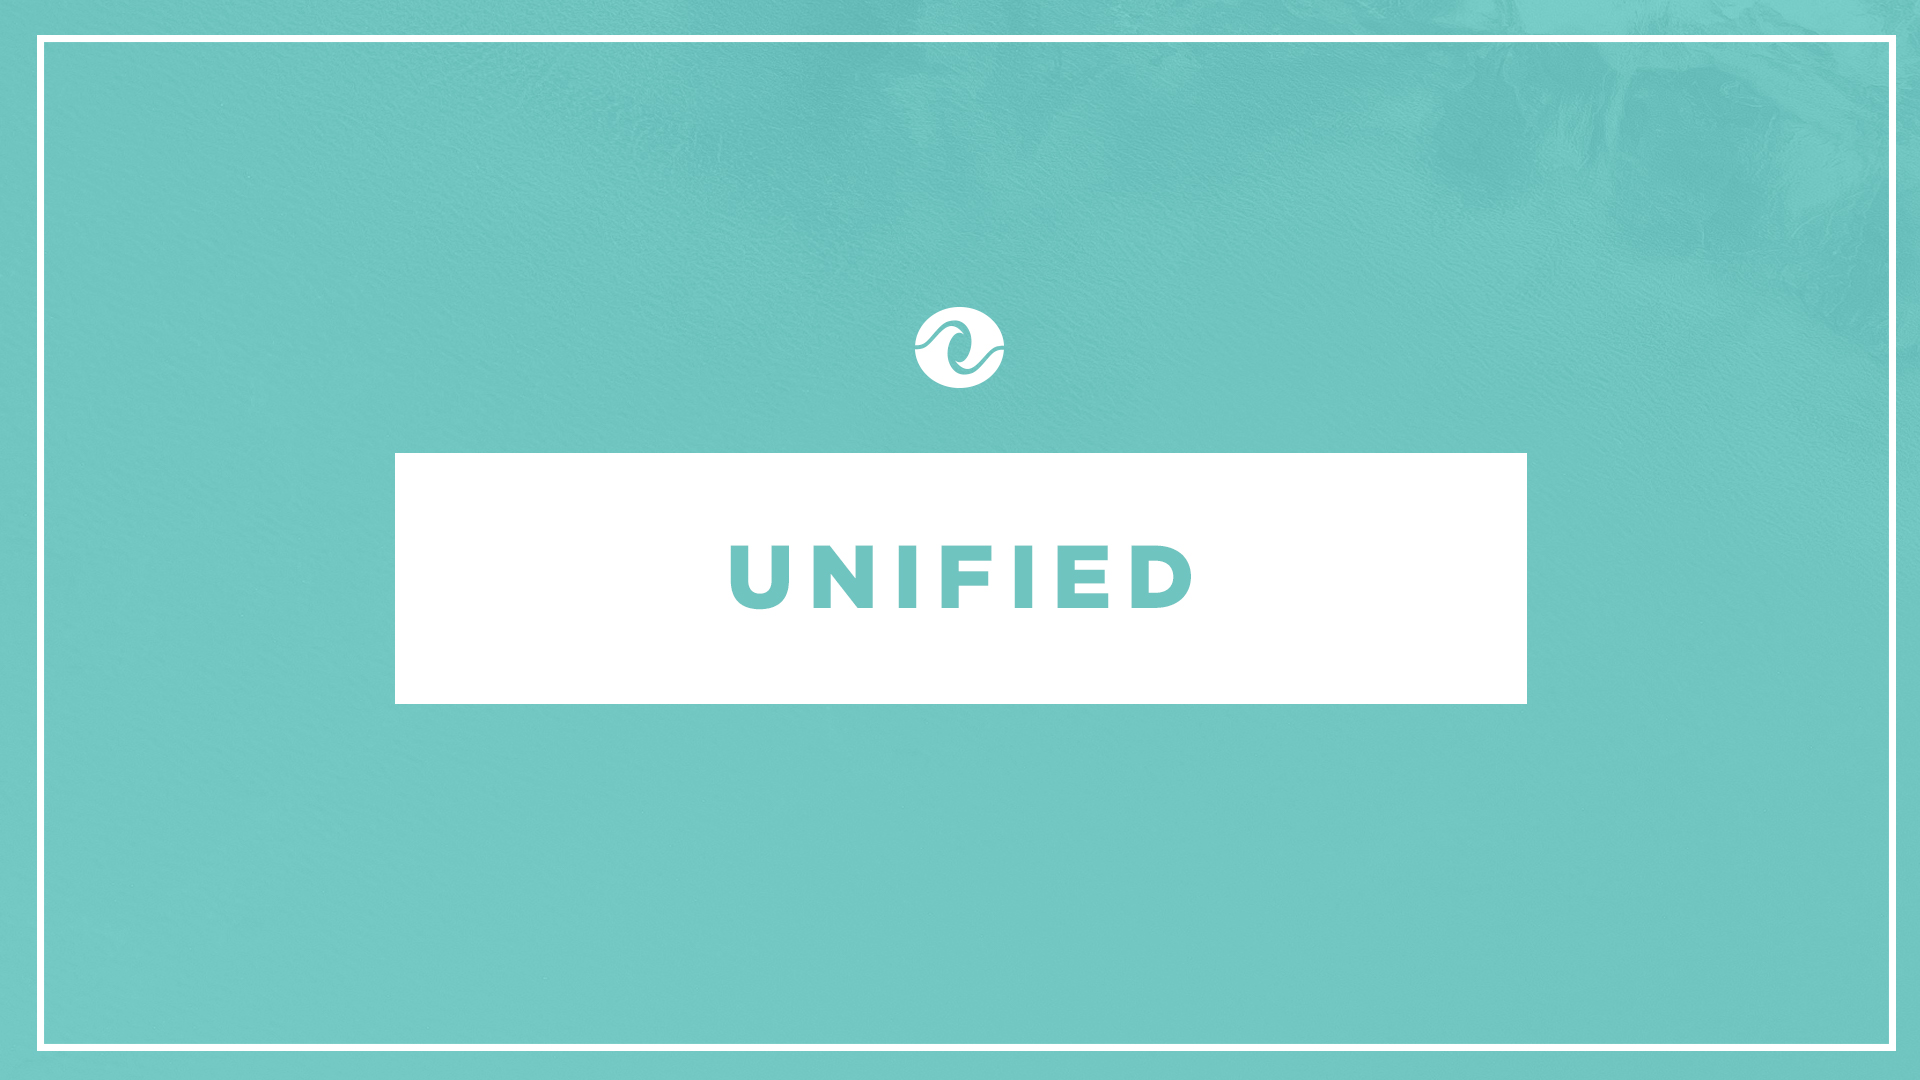 Uniquely Unified